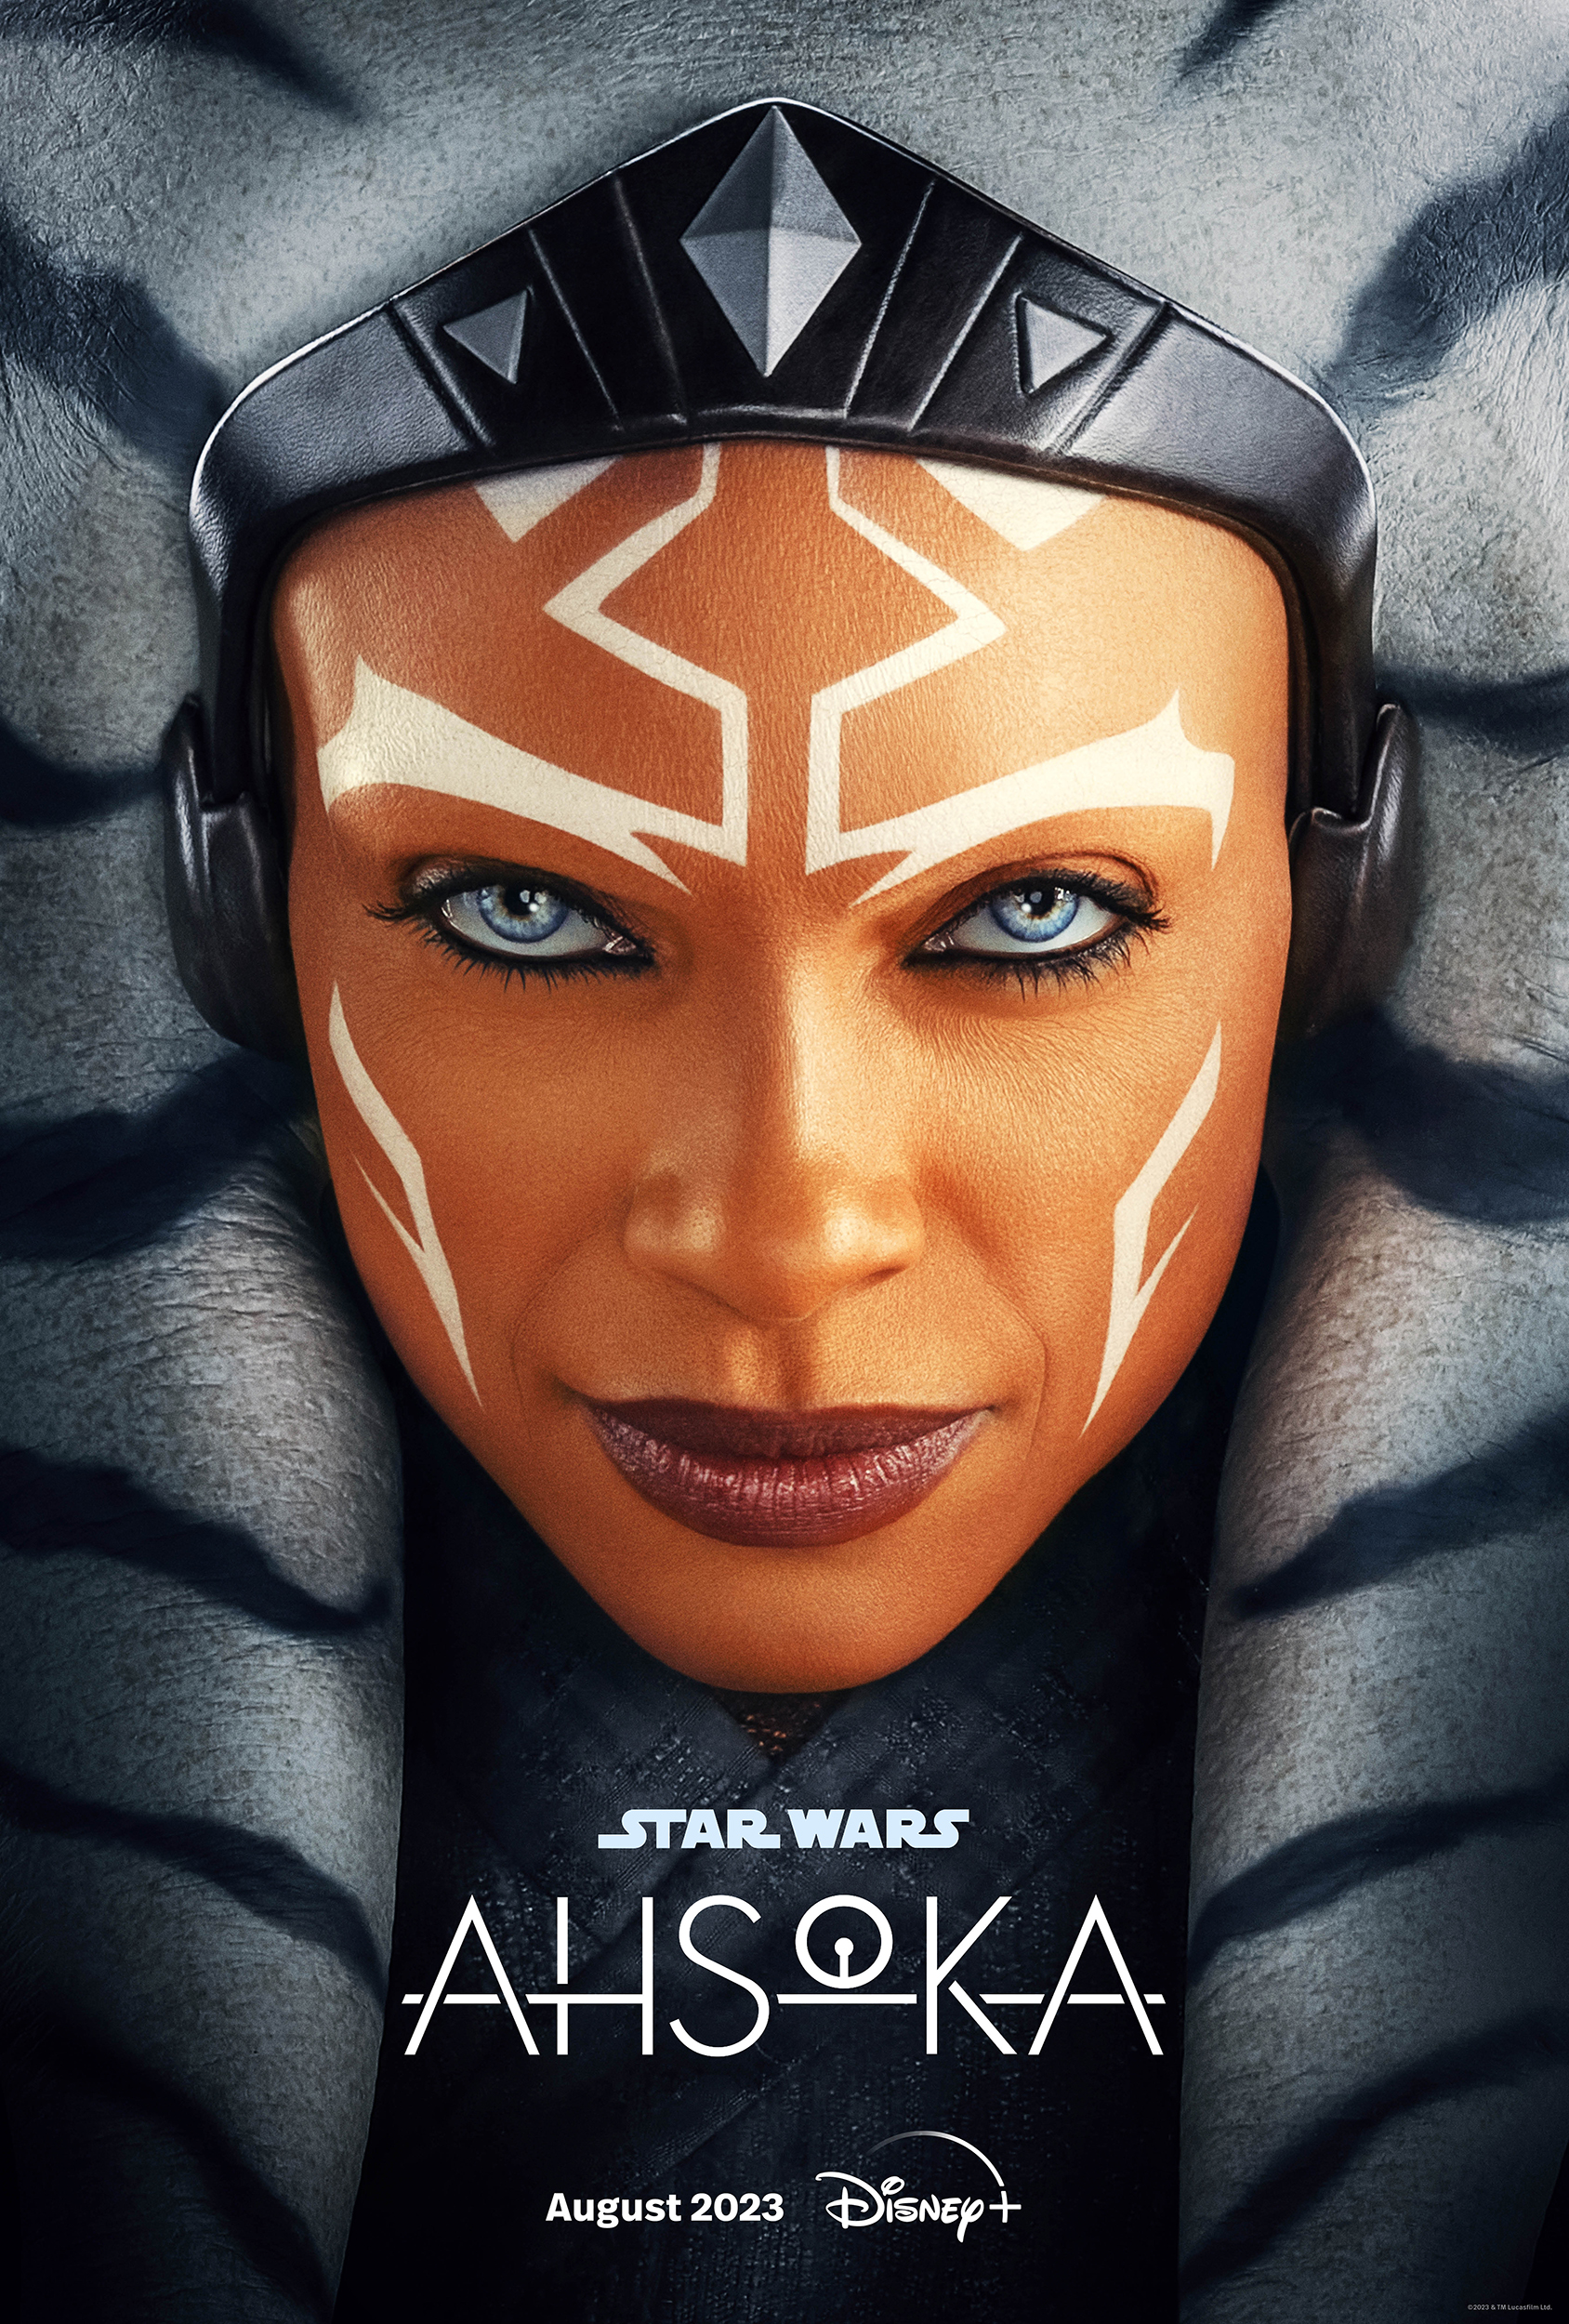 Star Wars Ashoka Serie auf Disney+. Das offizielle Poster.